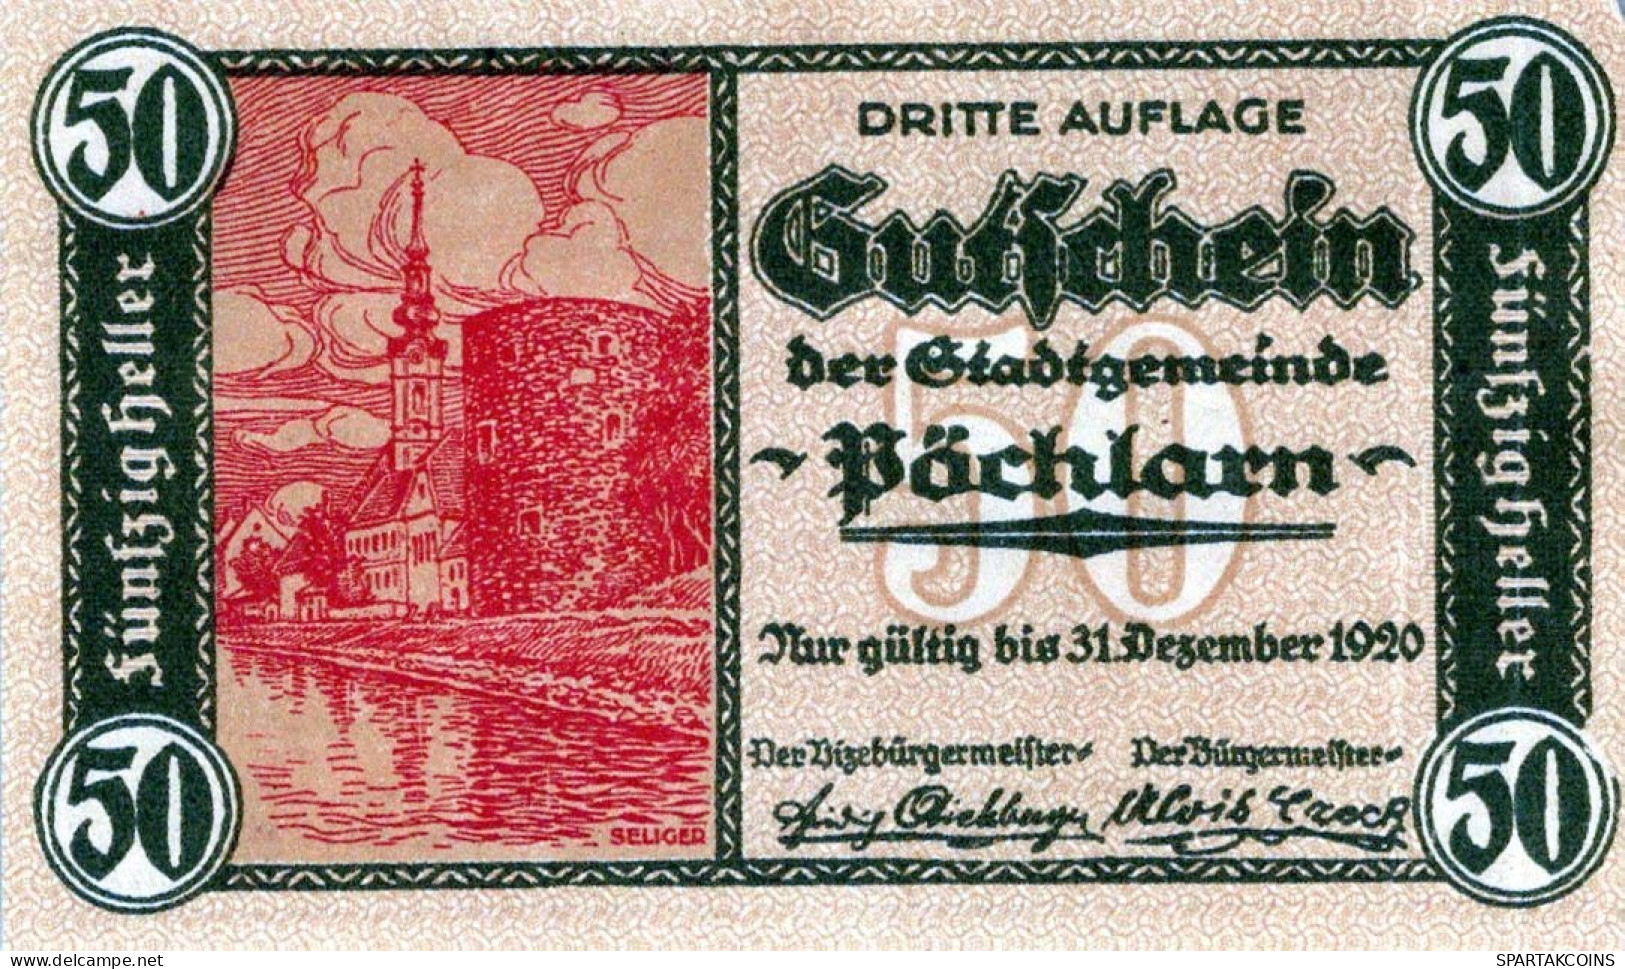 50 HELLER 1920 Stadt PoCHLARN Niedrigeren Österreich Notgeld Banknote #PI305 - [11] Emisiones Locales